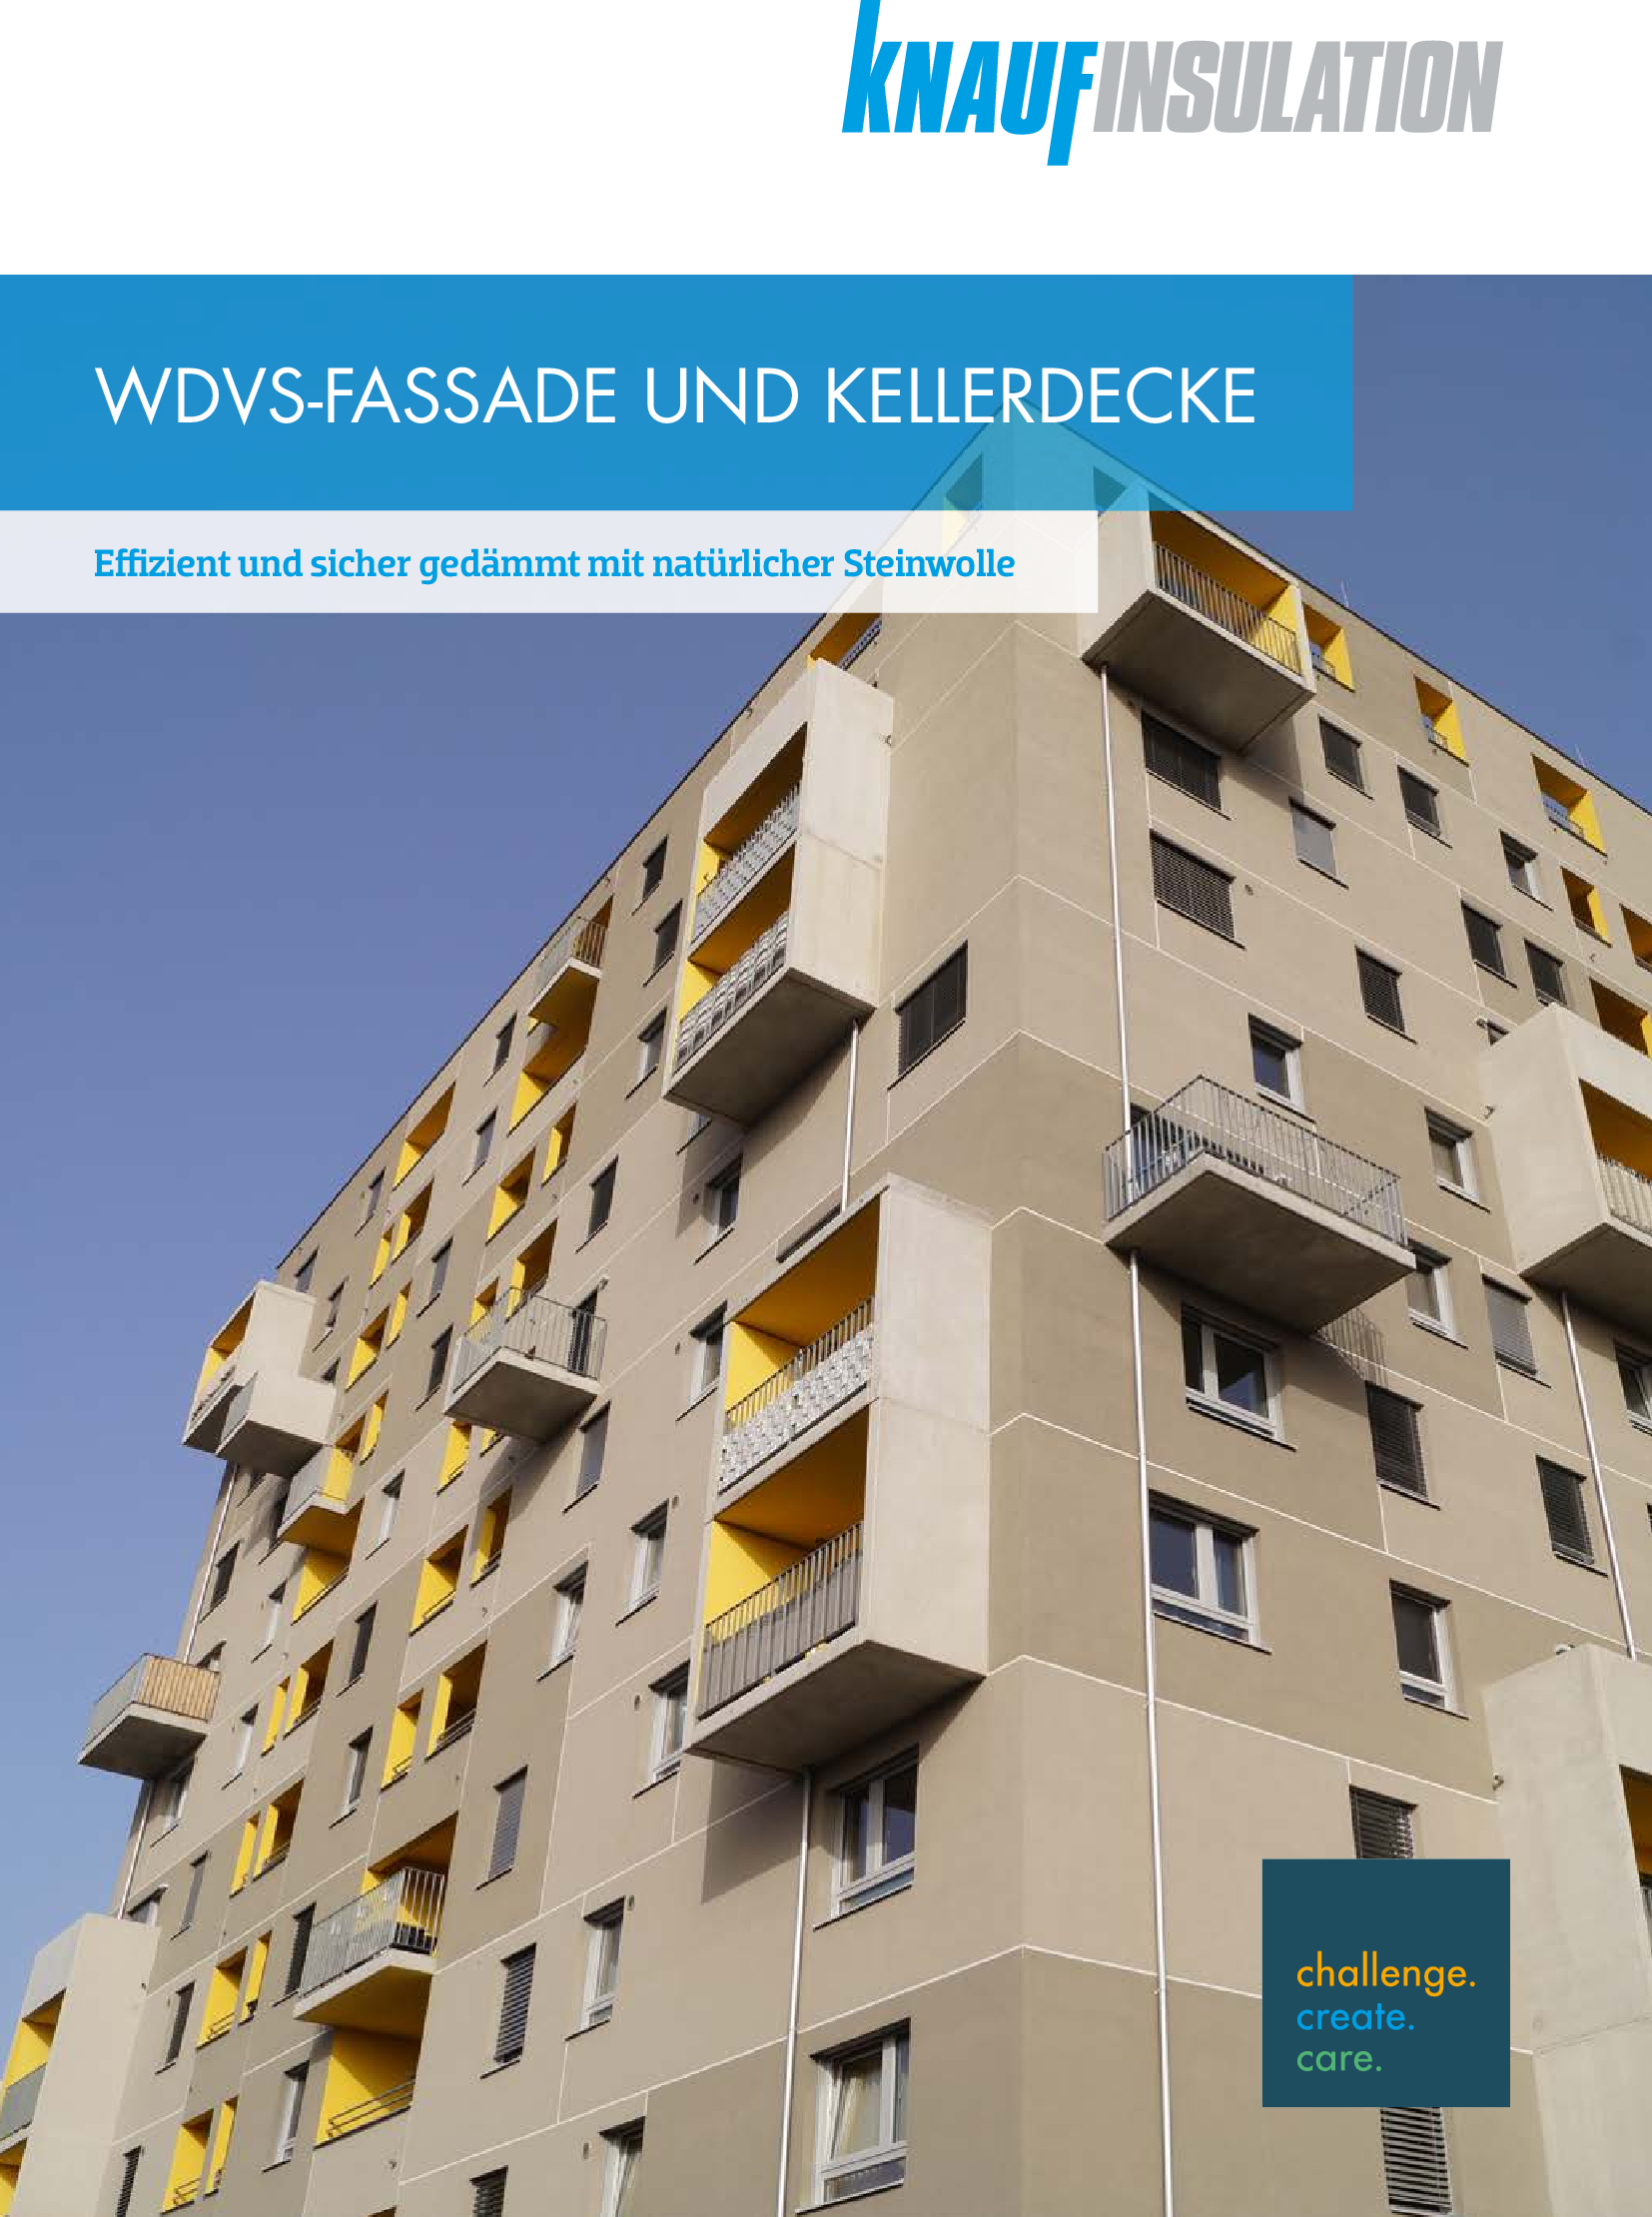 WDVS-Fassade und Kellerdecke, Lieferprogramm gültig ab 1. April 2021, UPDATE 07-2021